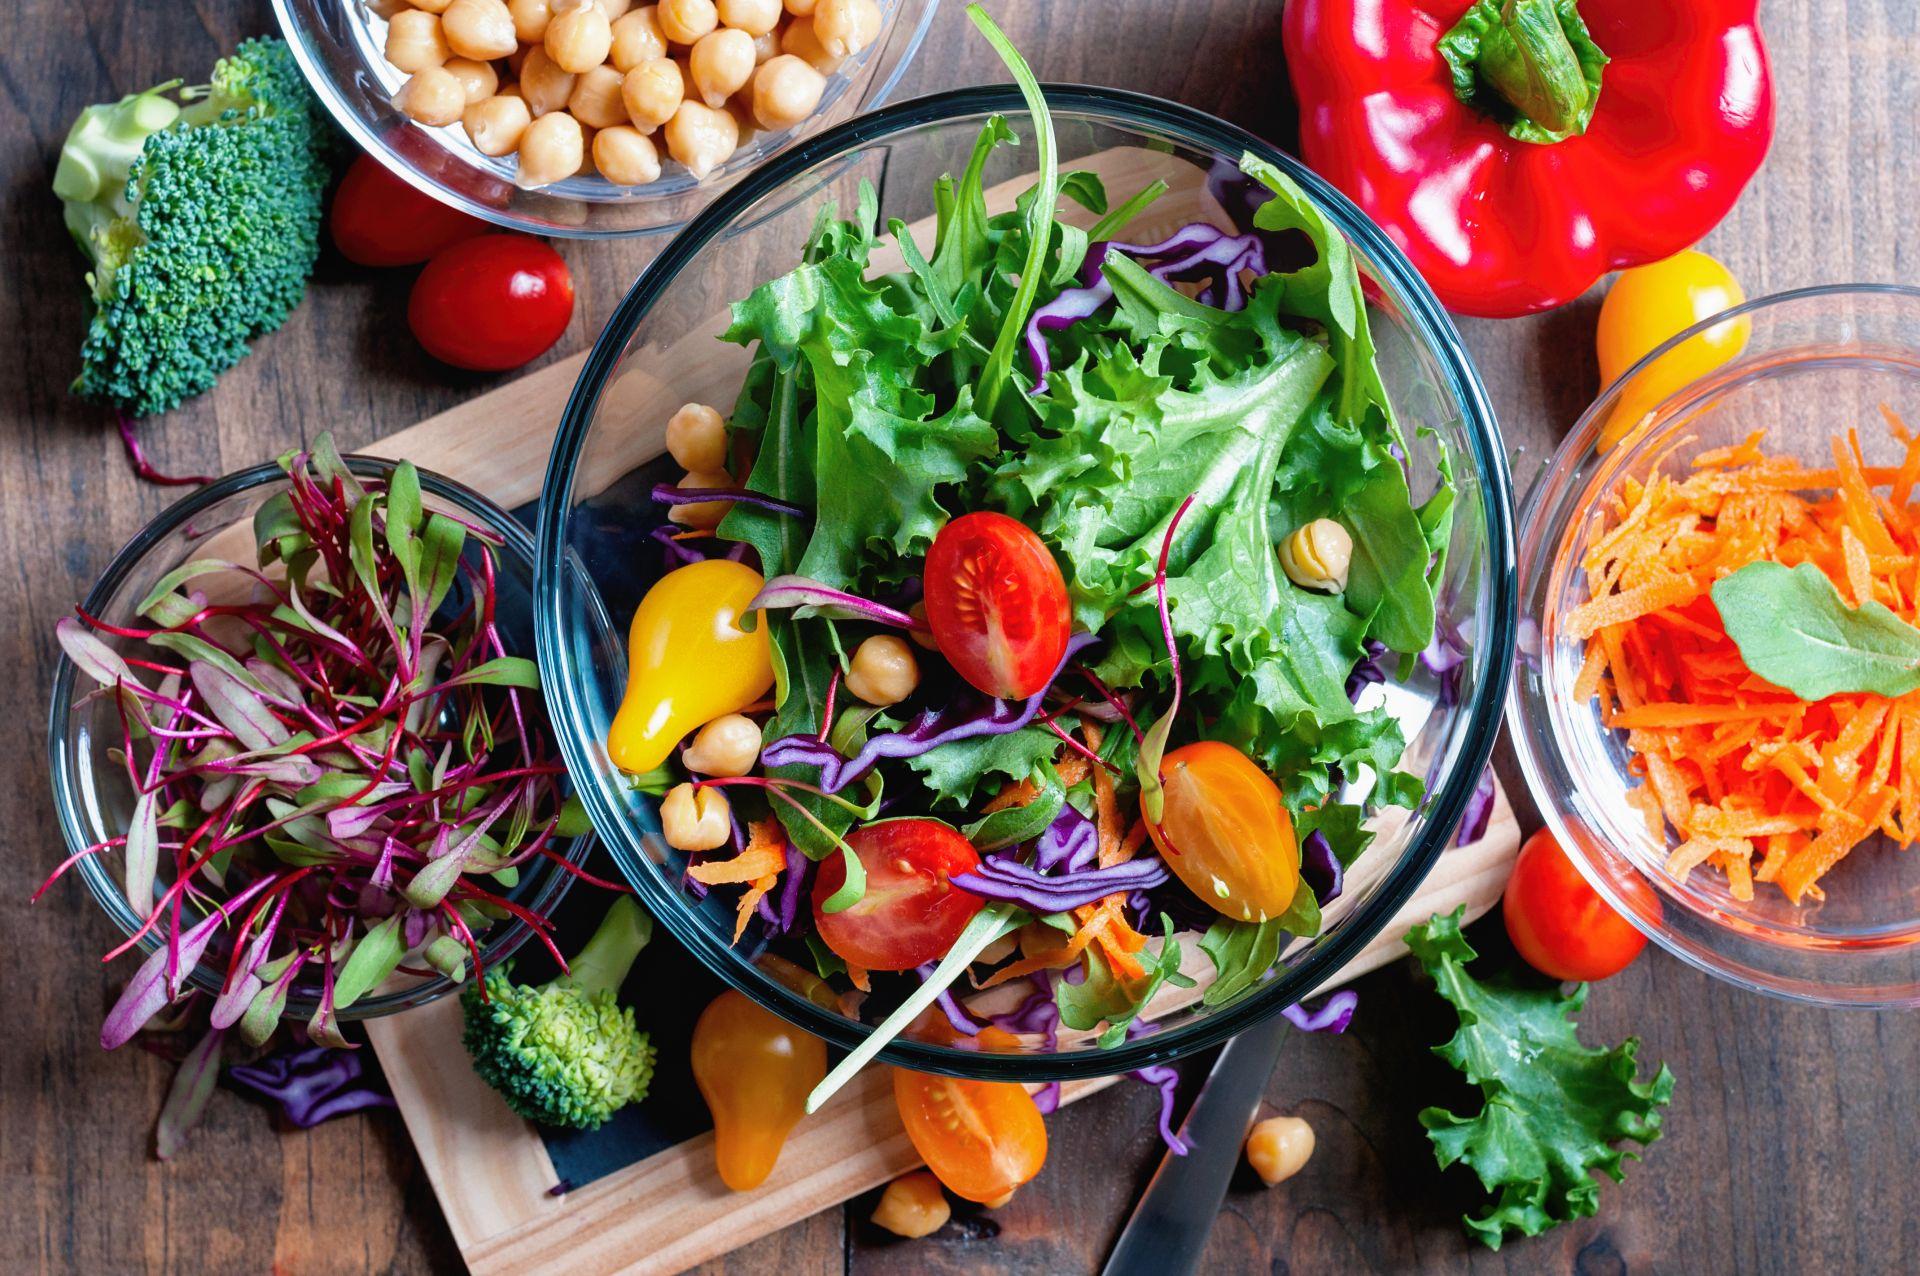 Особенности приготовления овощей. Вегетарианские блюда. Питание. Правильное питание. Правильное питание овощи и фрукты.